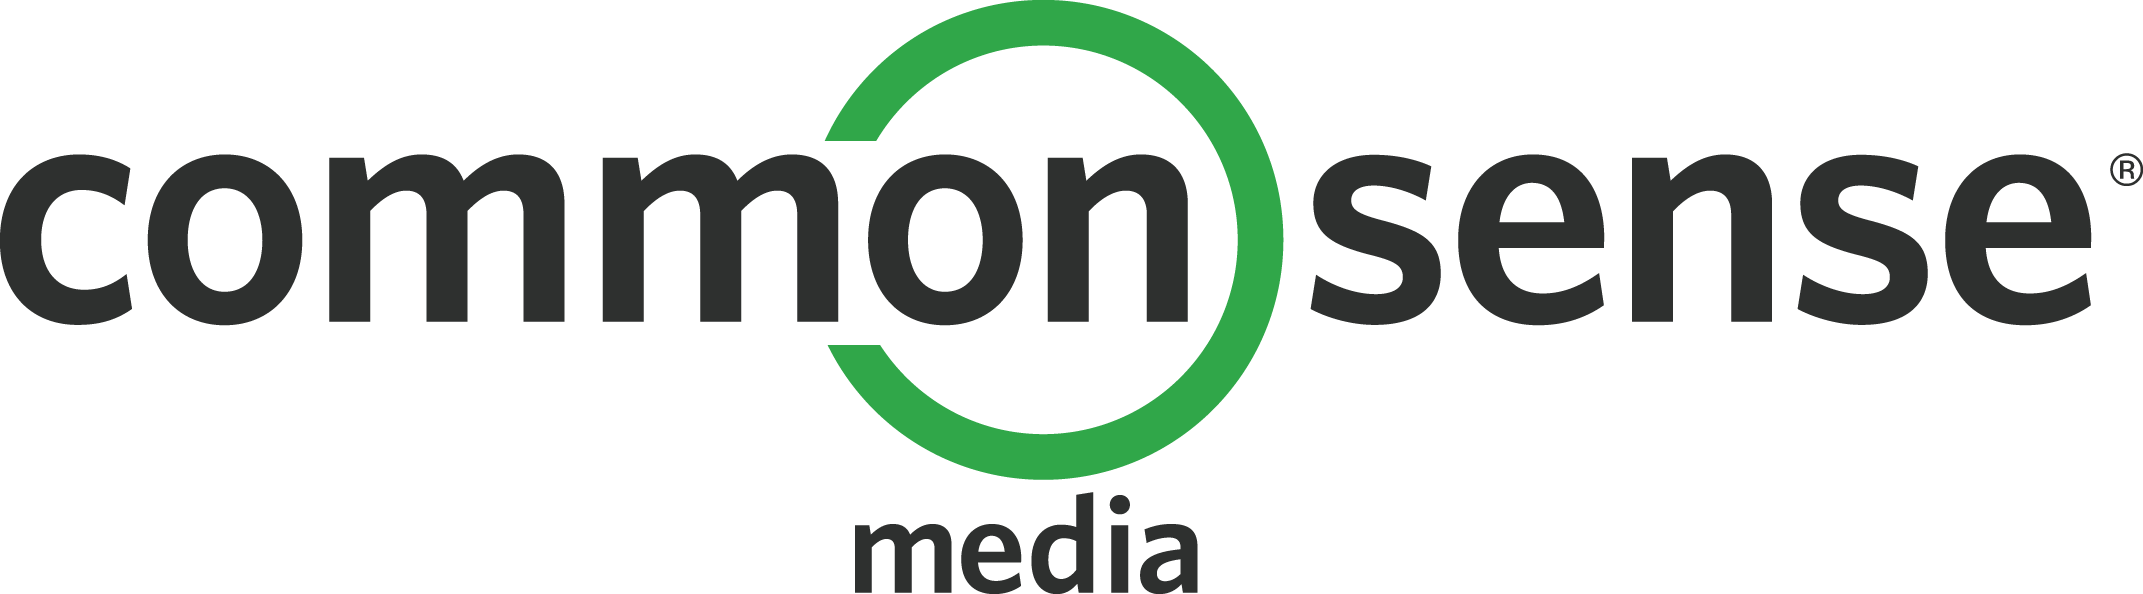 Common Sense Media Logo